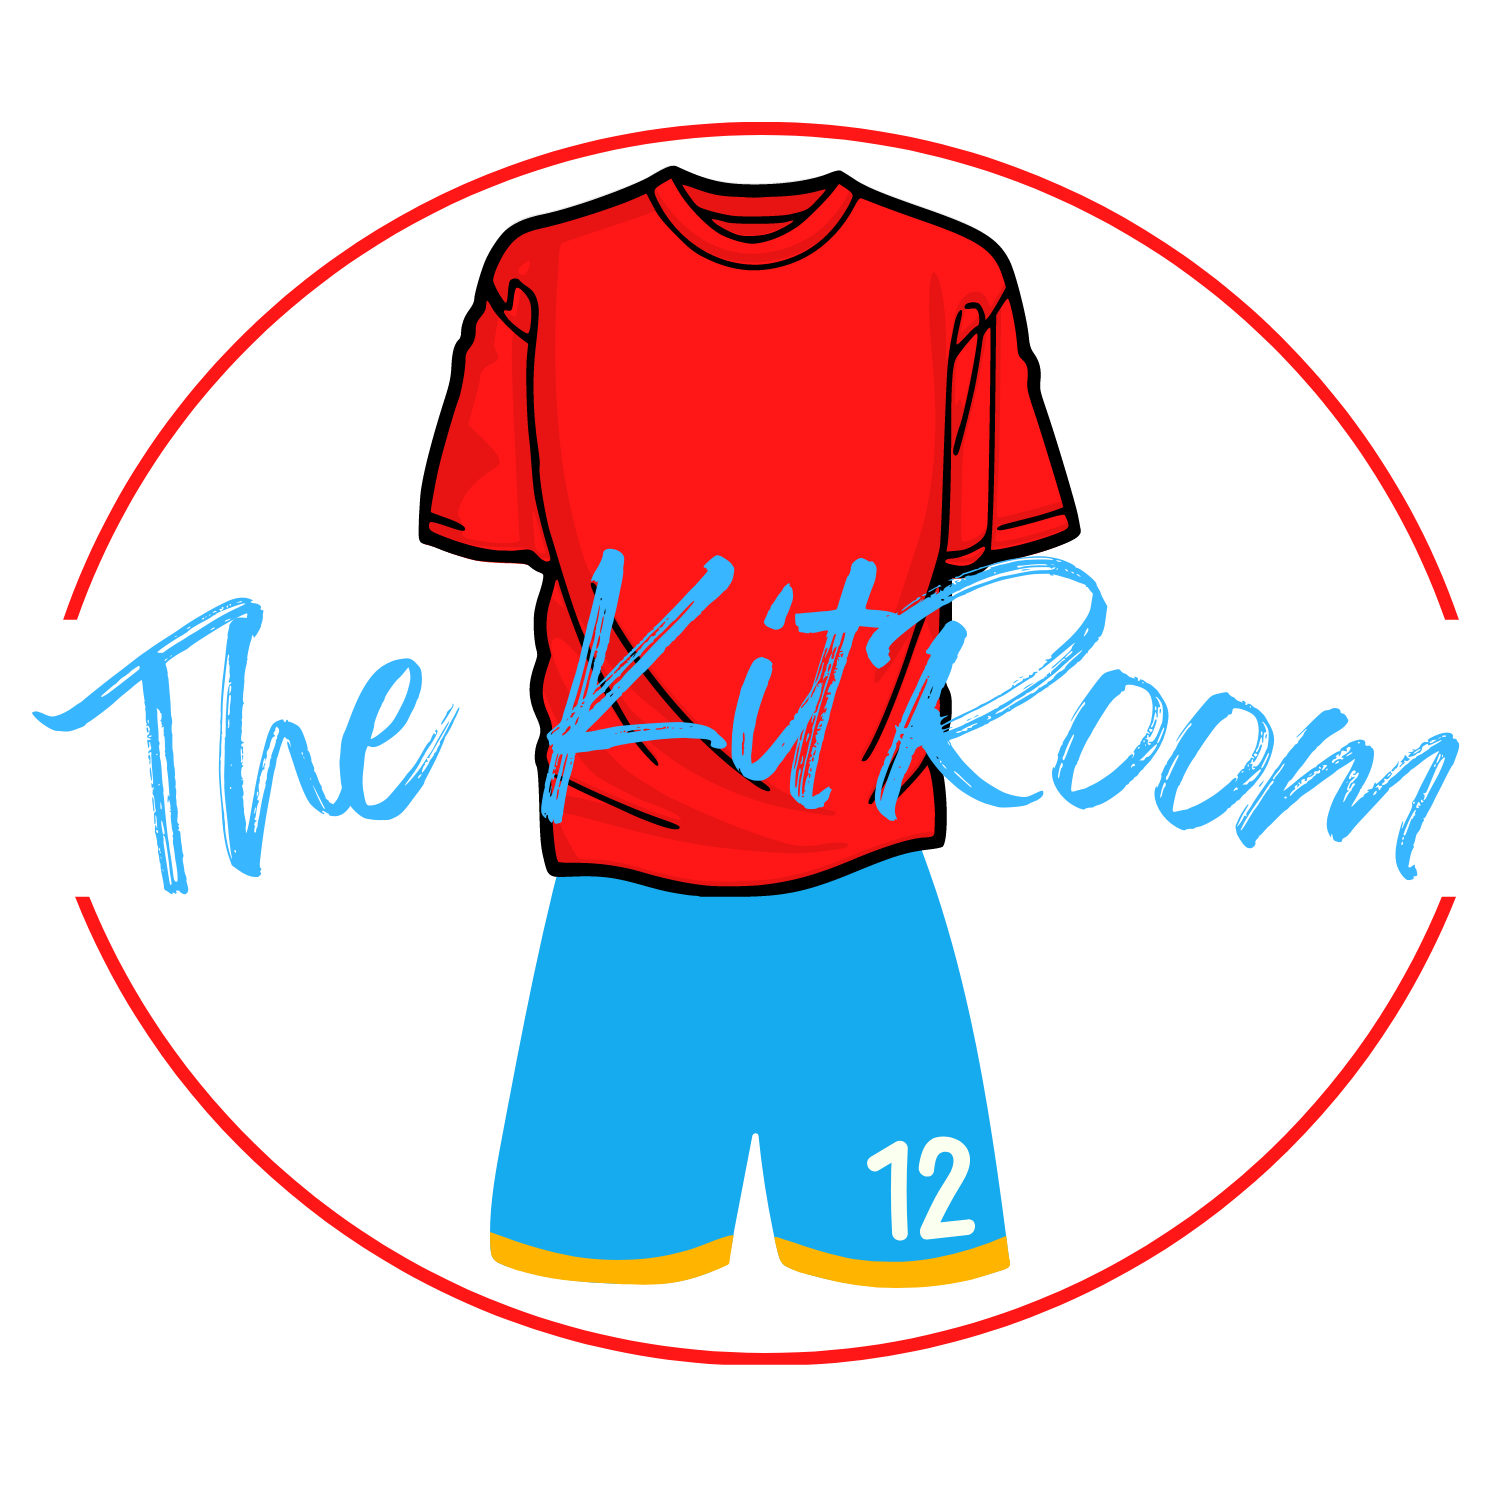 The Kitroom